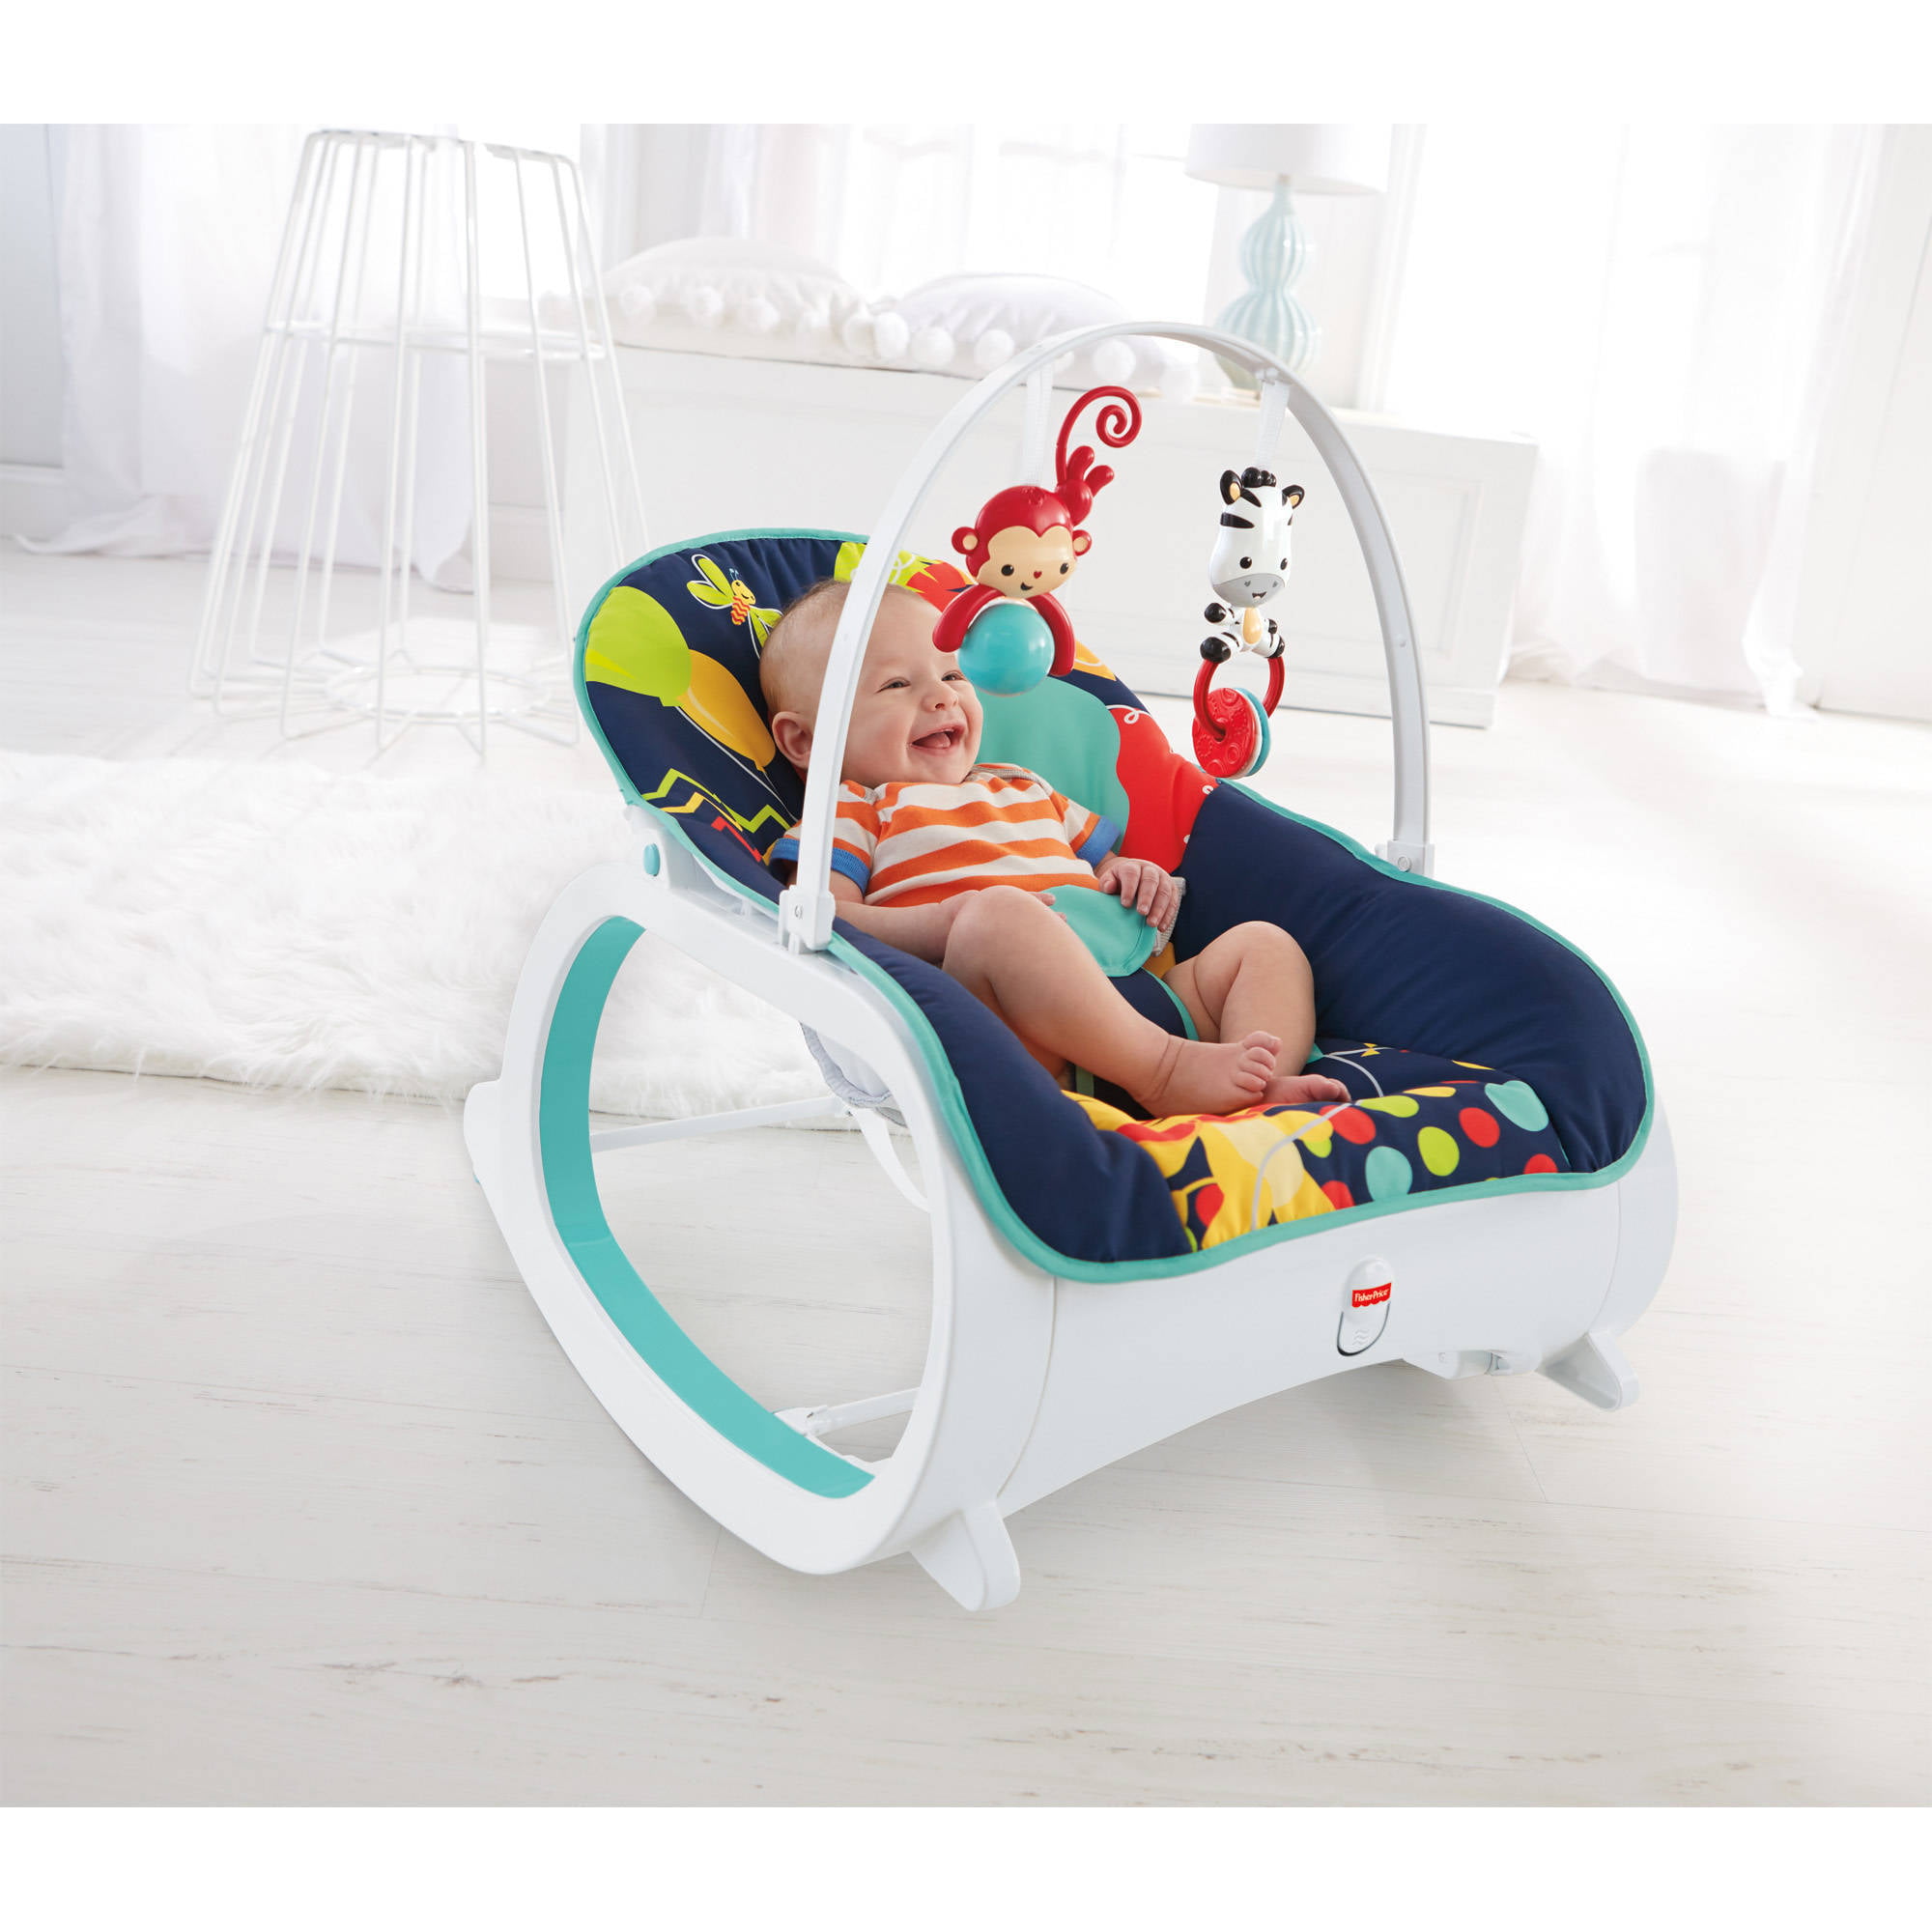 infant rocker seat